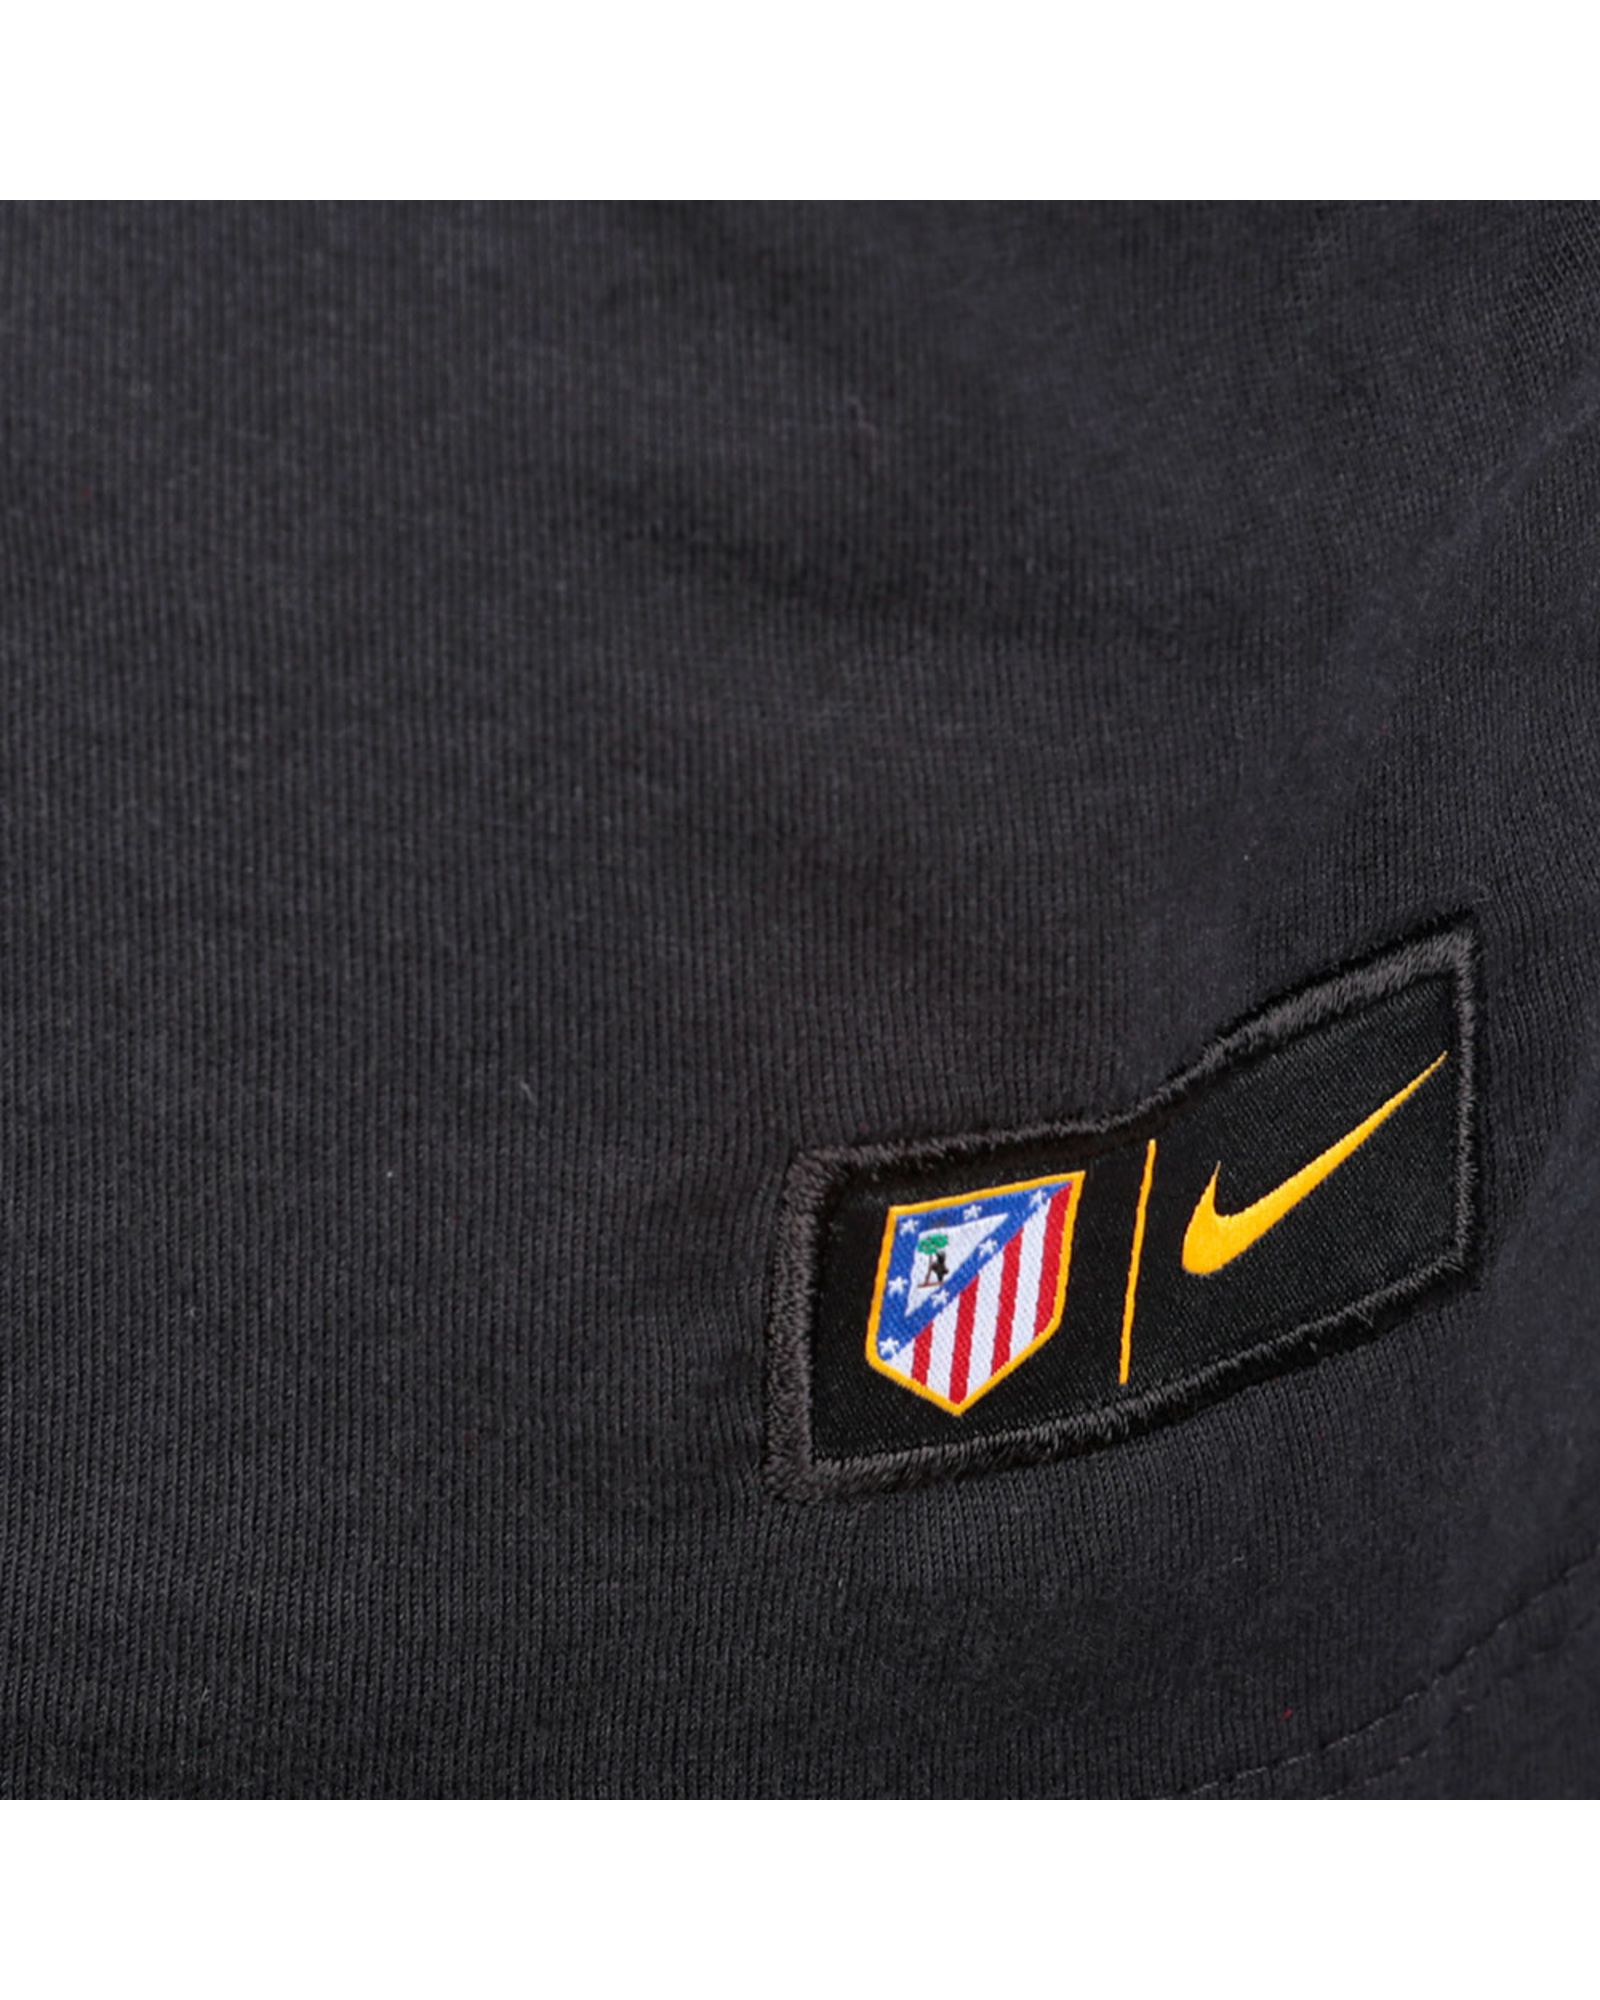 Camiseta Aficionado Atlético de Madrid 2016/2017 Junior Negro - Fútbol Factory